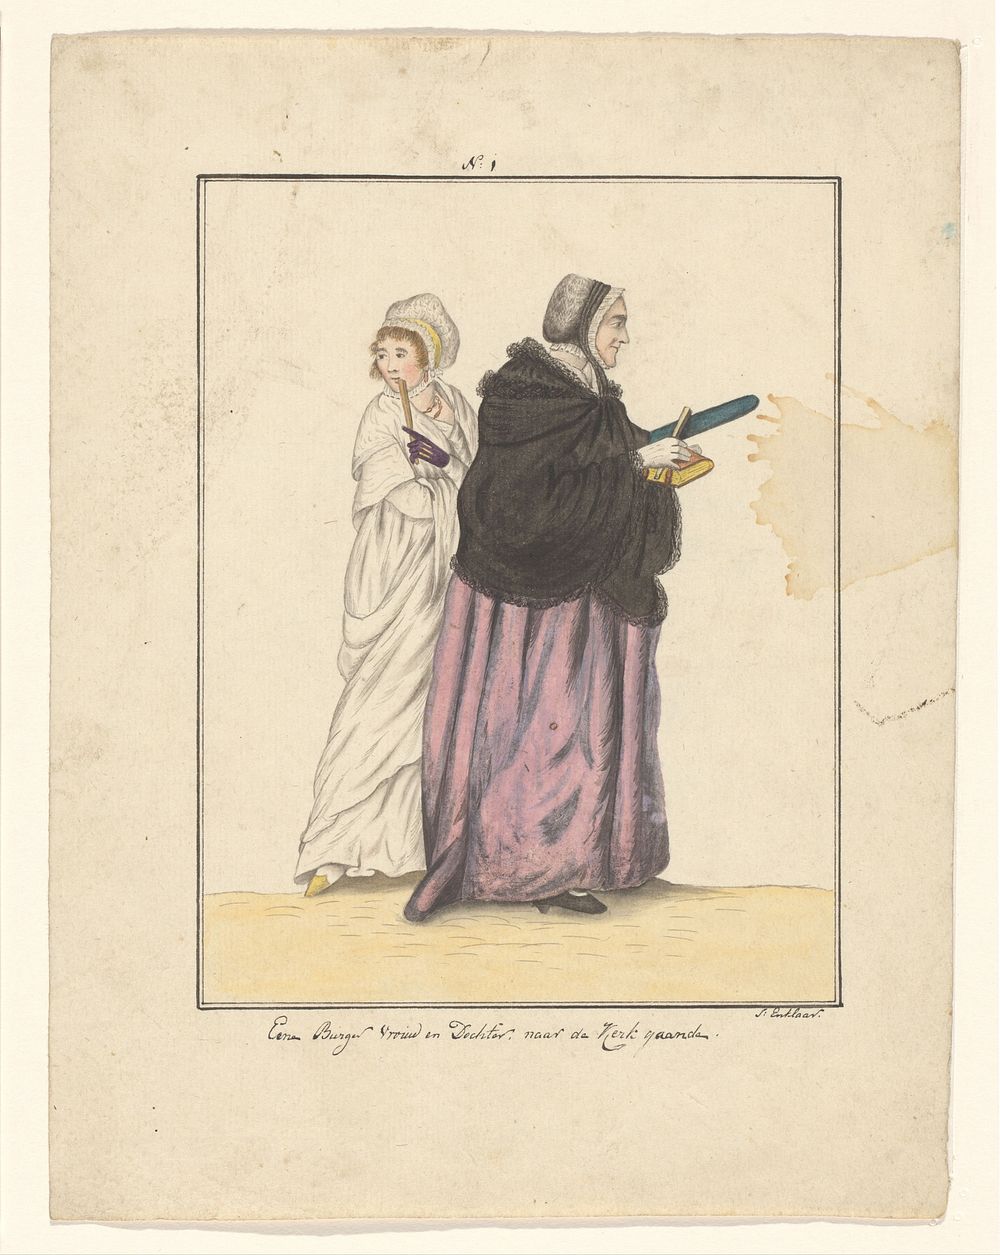 Moeder en dochter op weg naar de kerk (in or after 1803 - c. 1899) by J Enklaar and Ludwig Gottlieb Portman